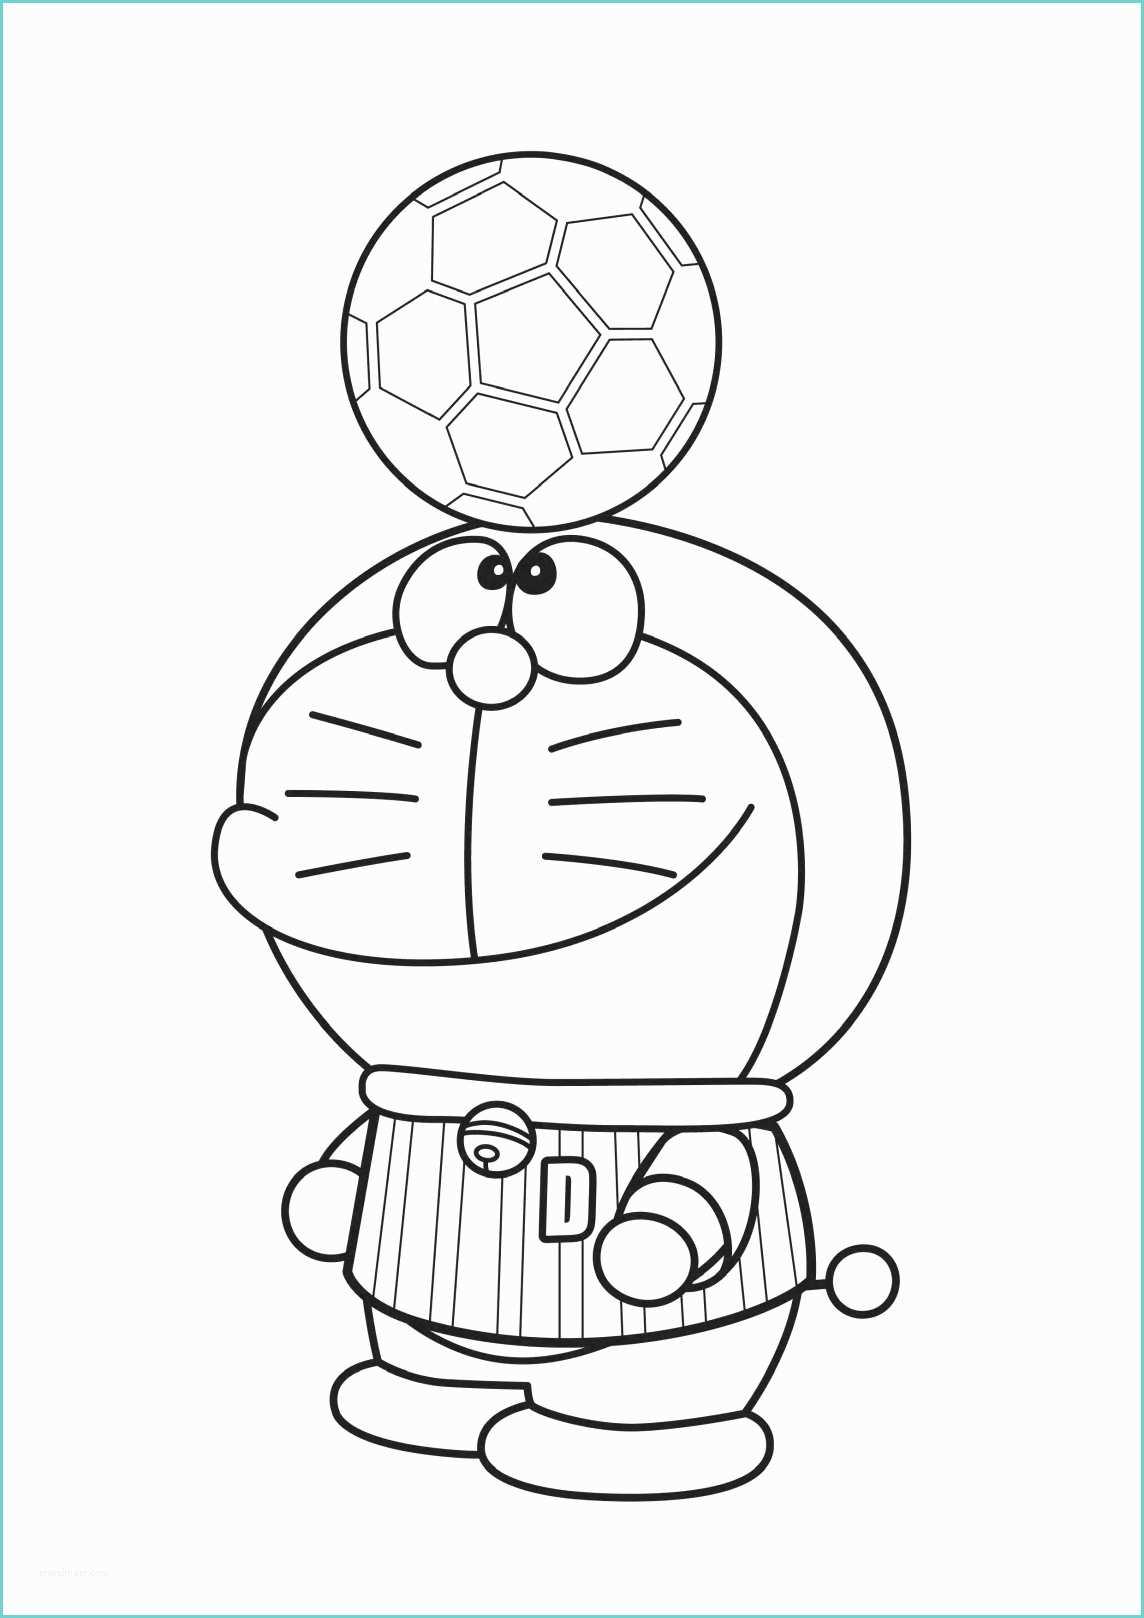 Disegni Di Doraemon Immagini Bambini Doraemon Giochi Di Doraemon